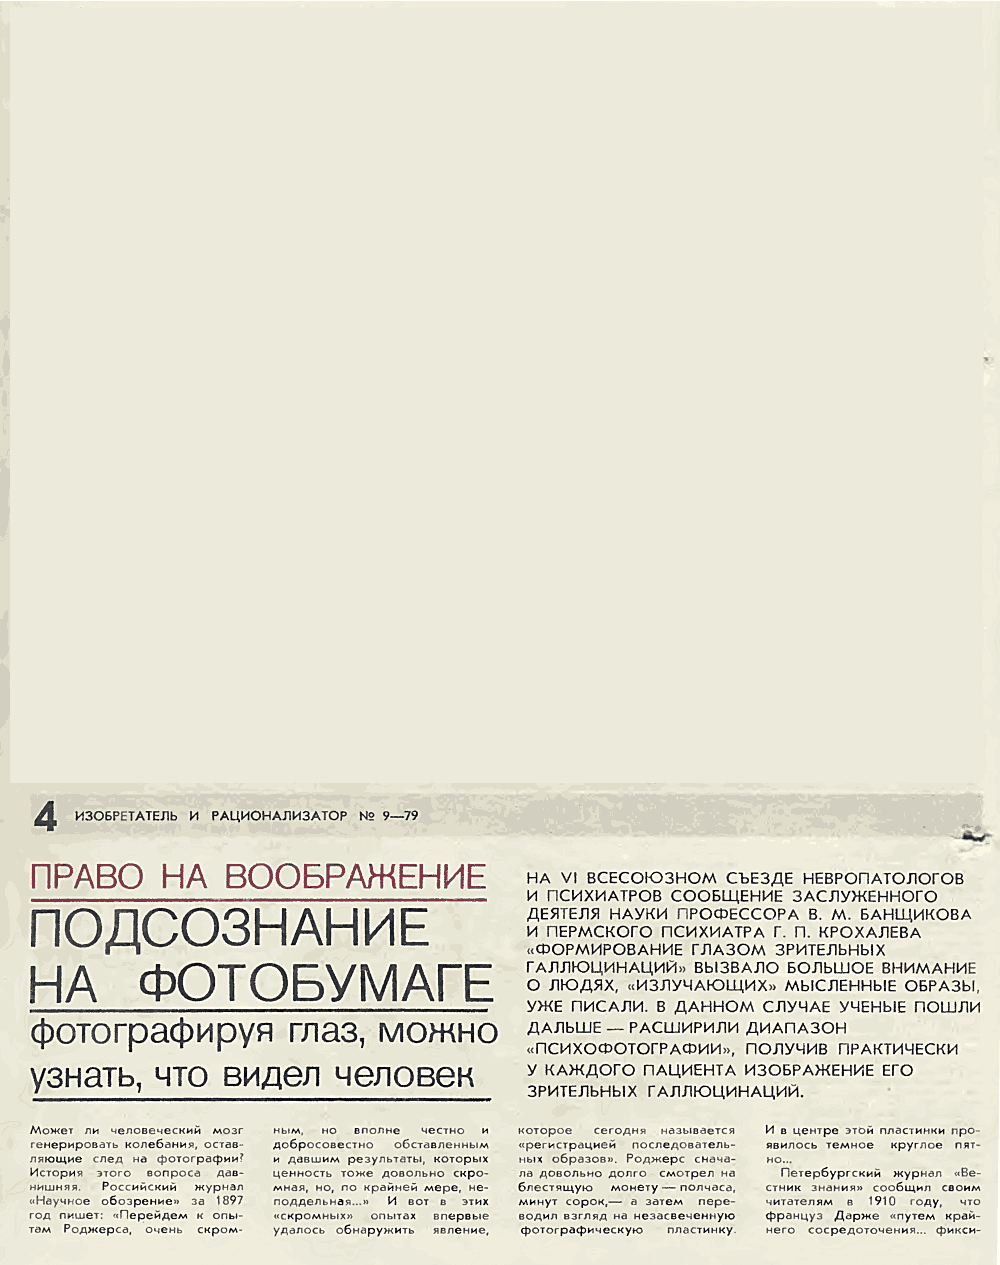 Подсознание на фотобумаге. В. Богатырев. Изобретатель и рационализатор, 1979, №9, с.4-7,24-25. Фотокопия №1